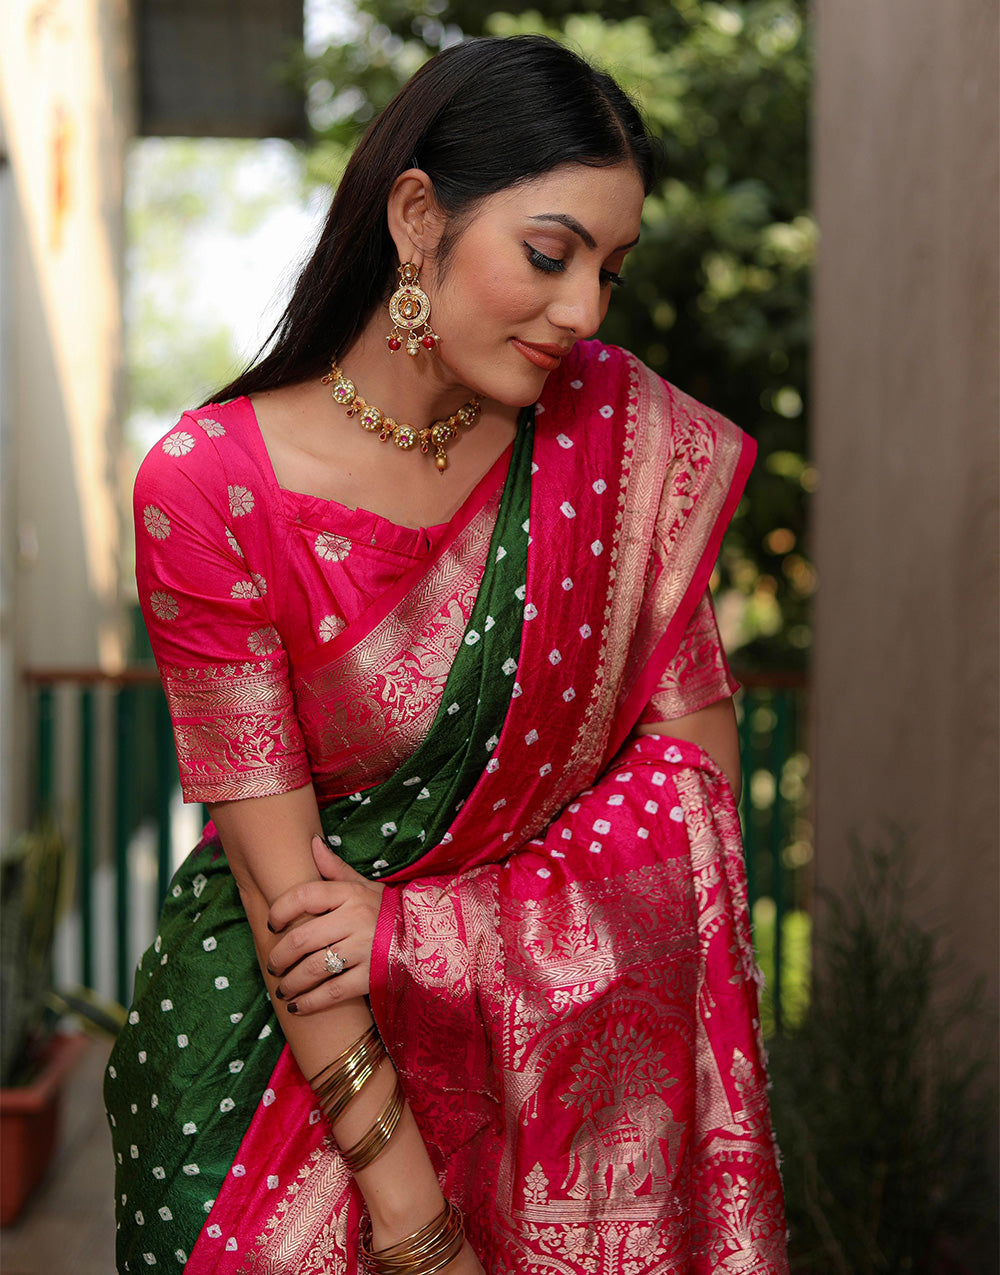 Pink & Dark Green Hand Bandhej Bandhani Saree With Weaving Work